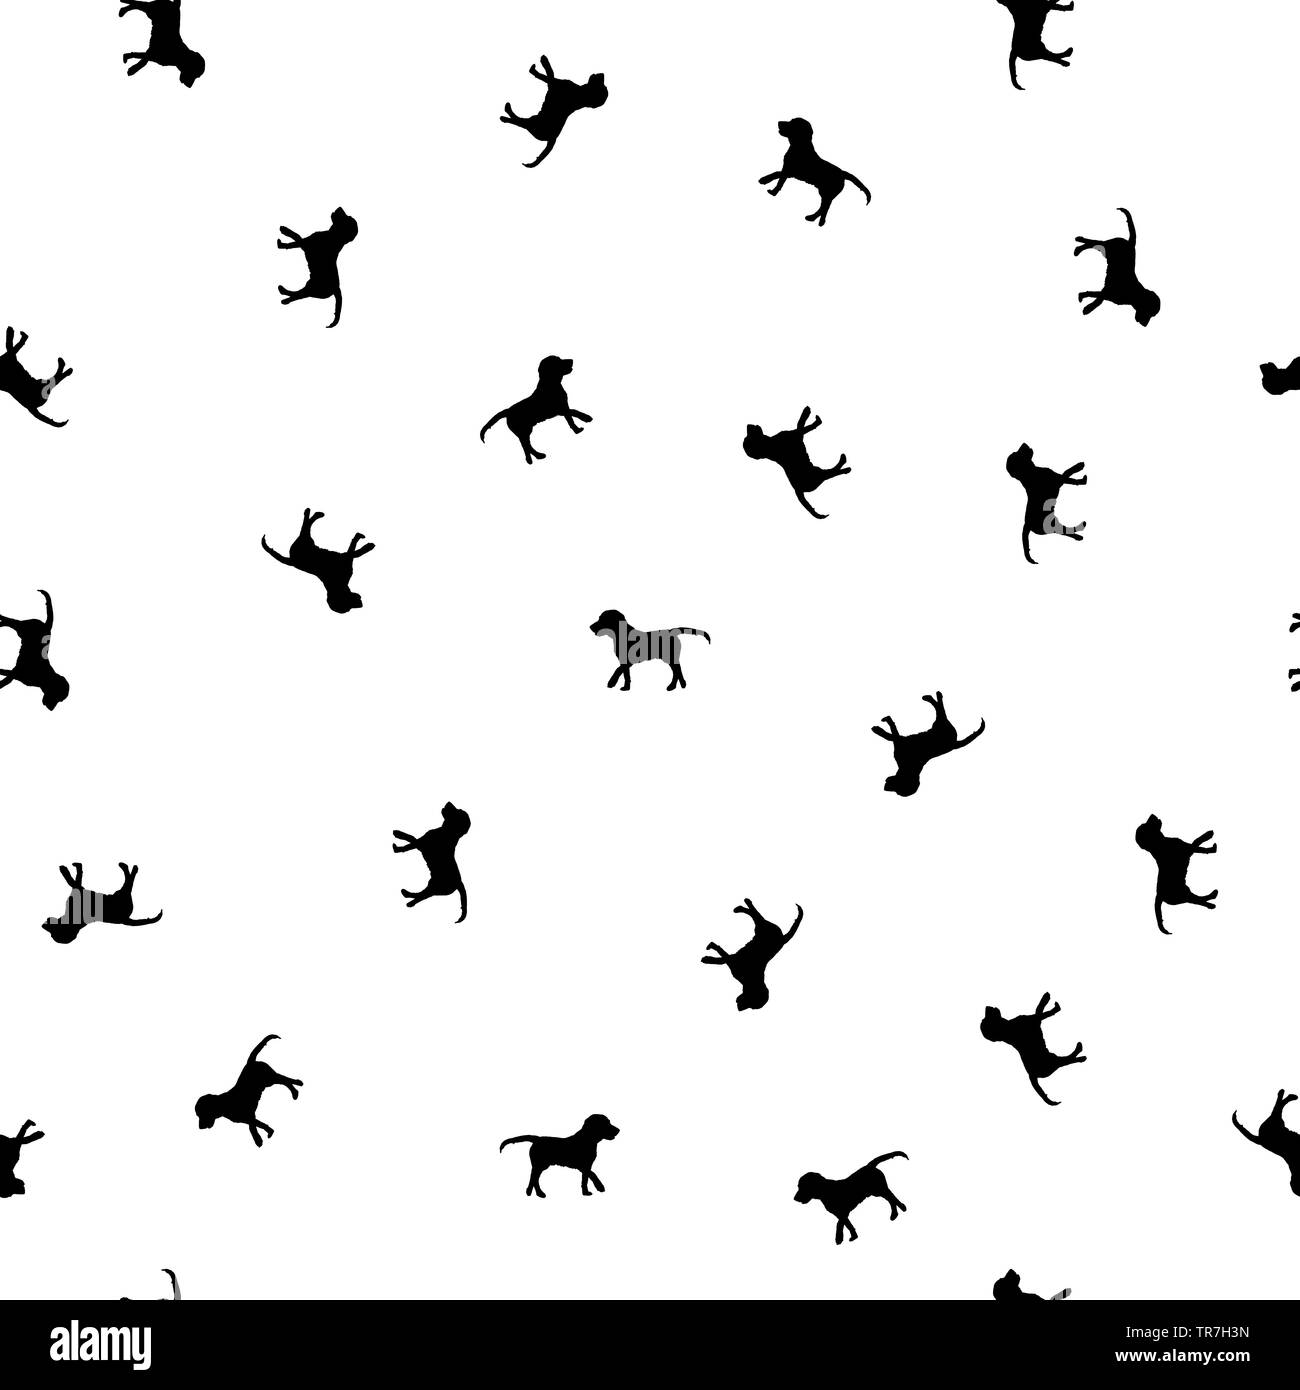 20 Cute Animal Wallpapers for iPhone - Hongkiat